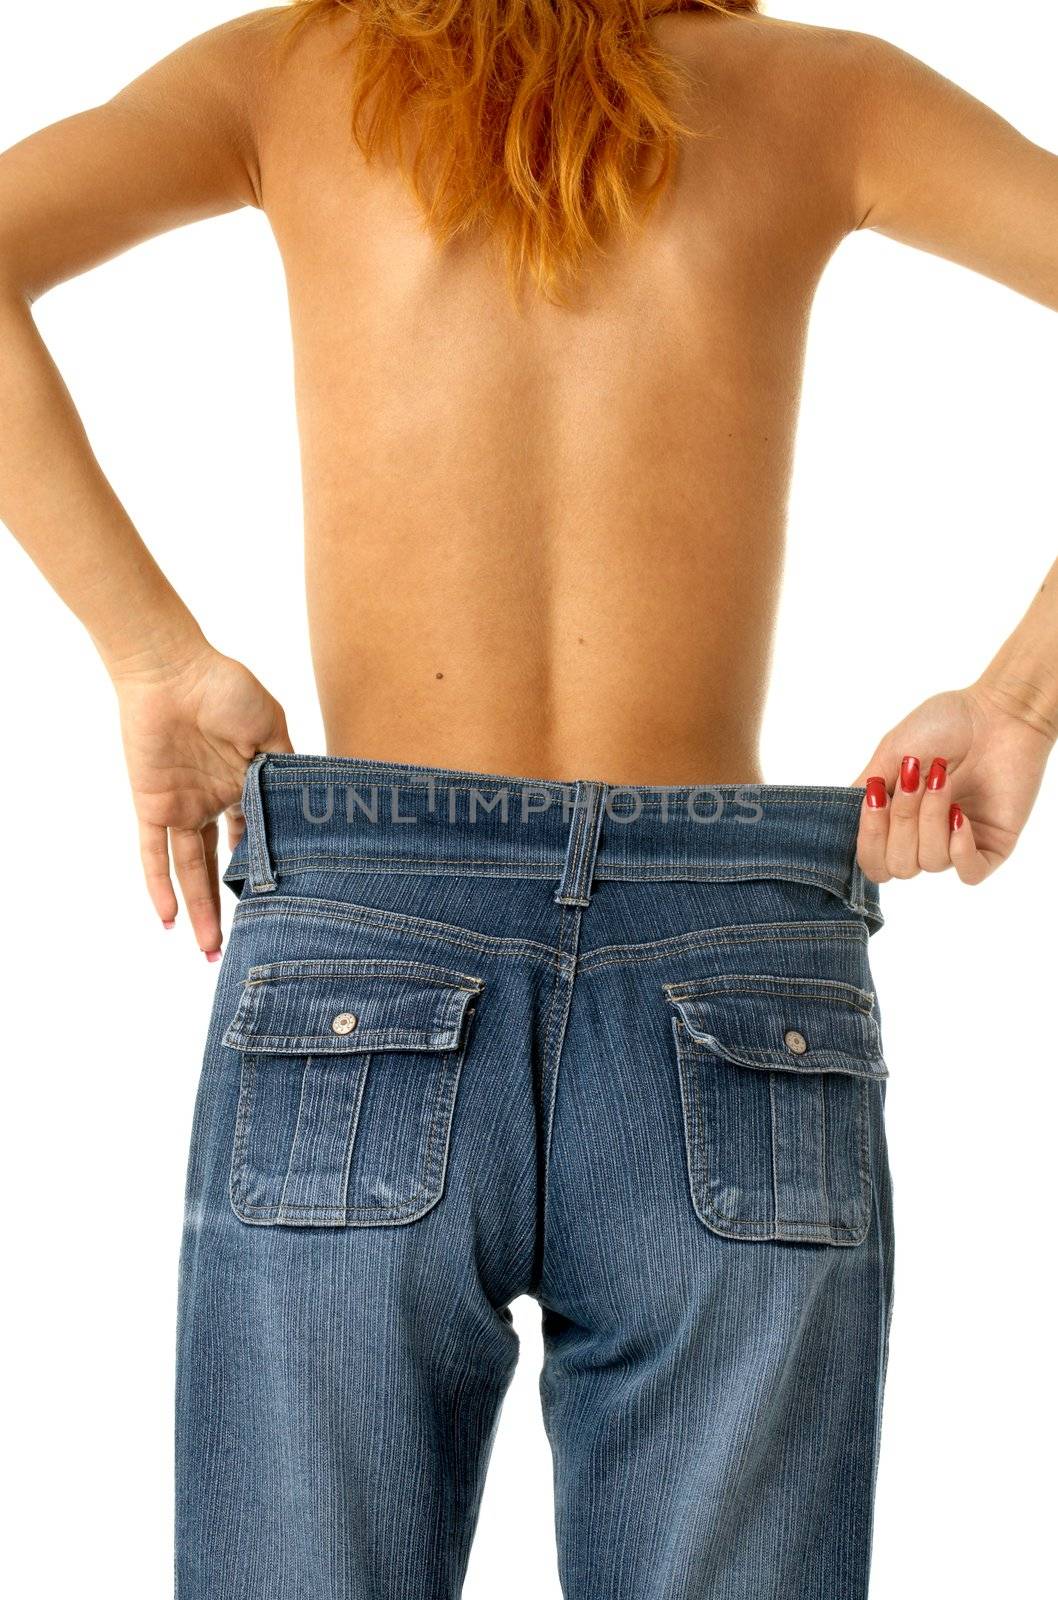 Slim girl in big size jeans